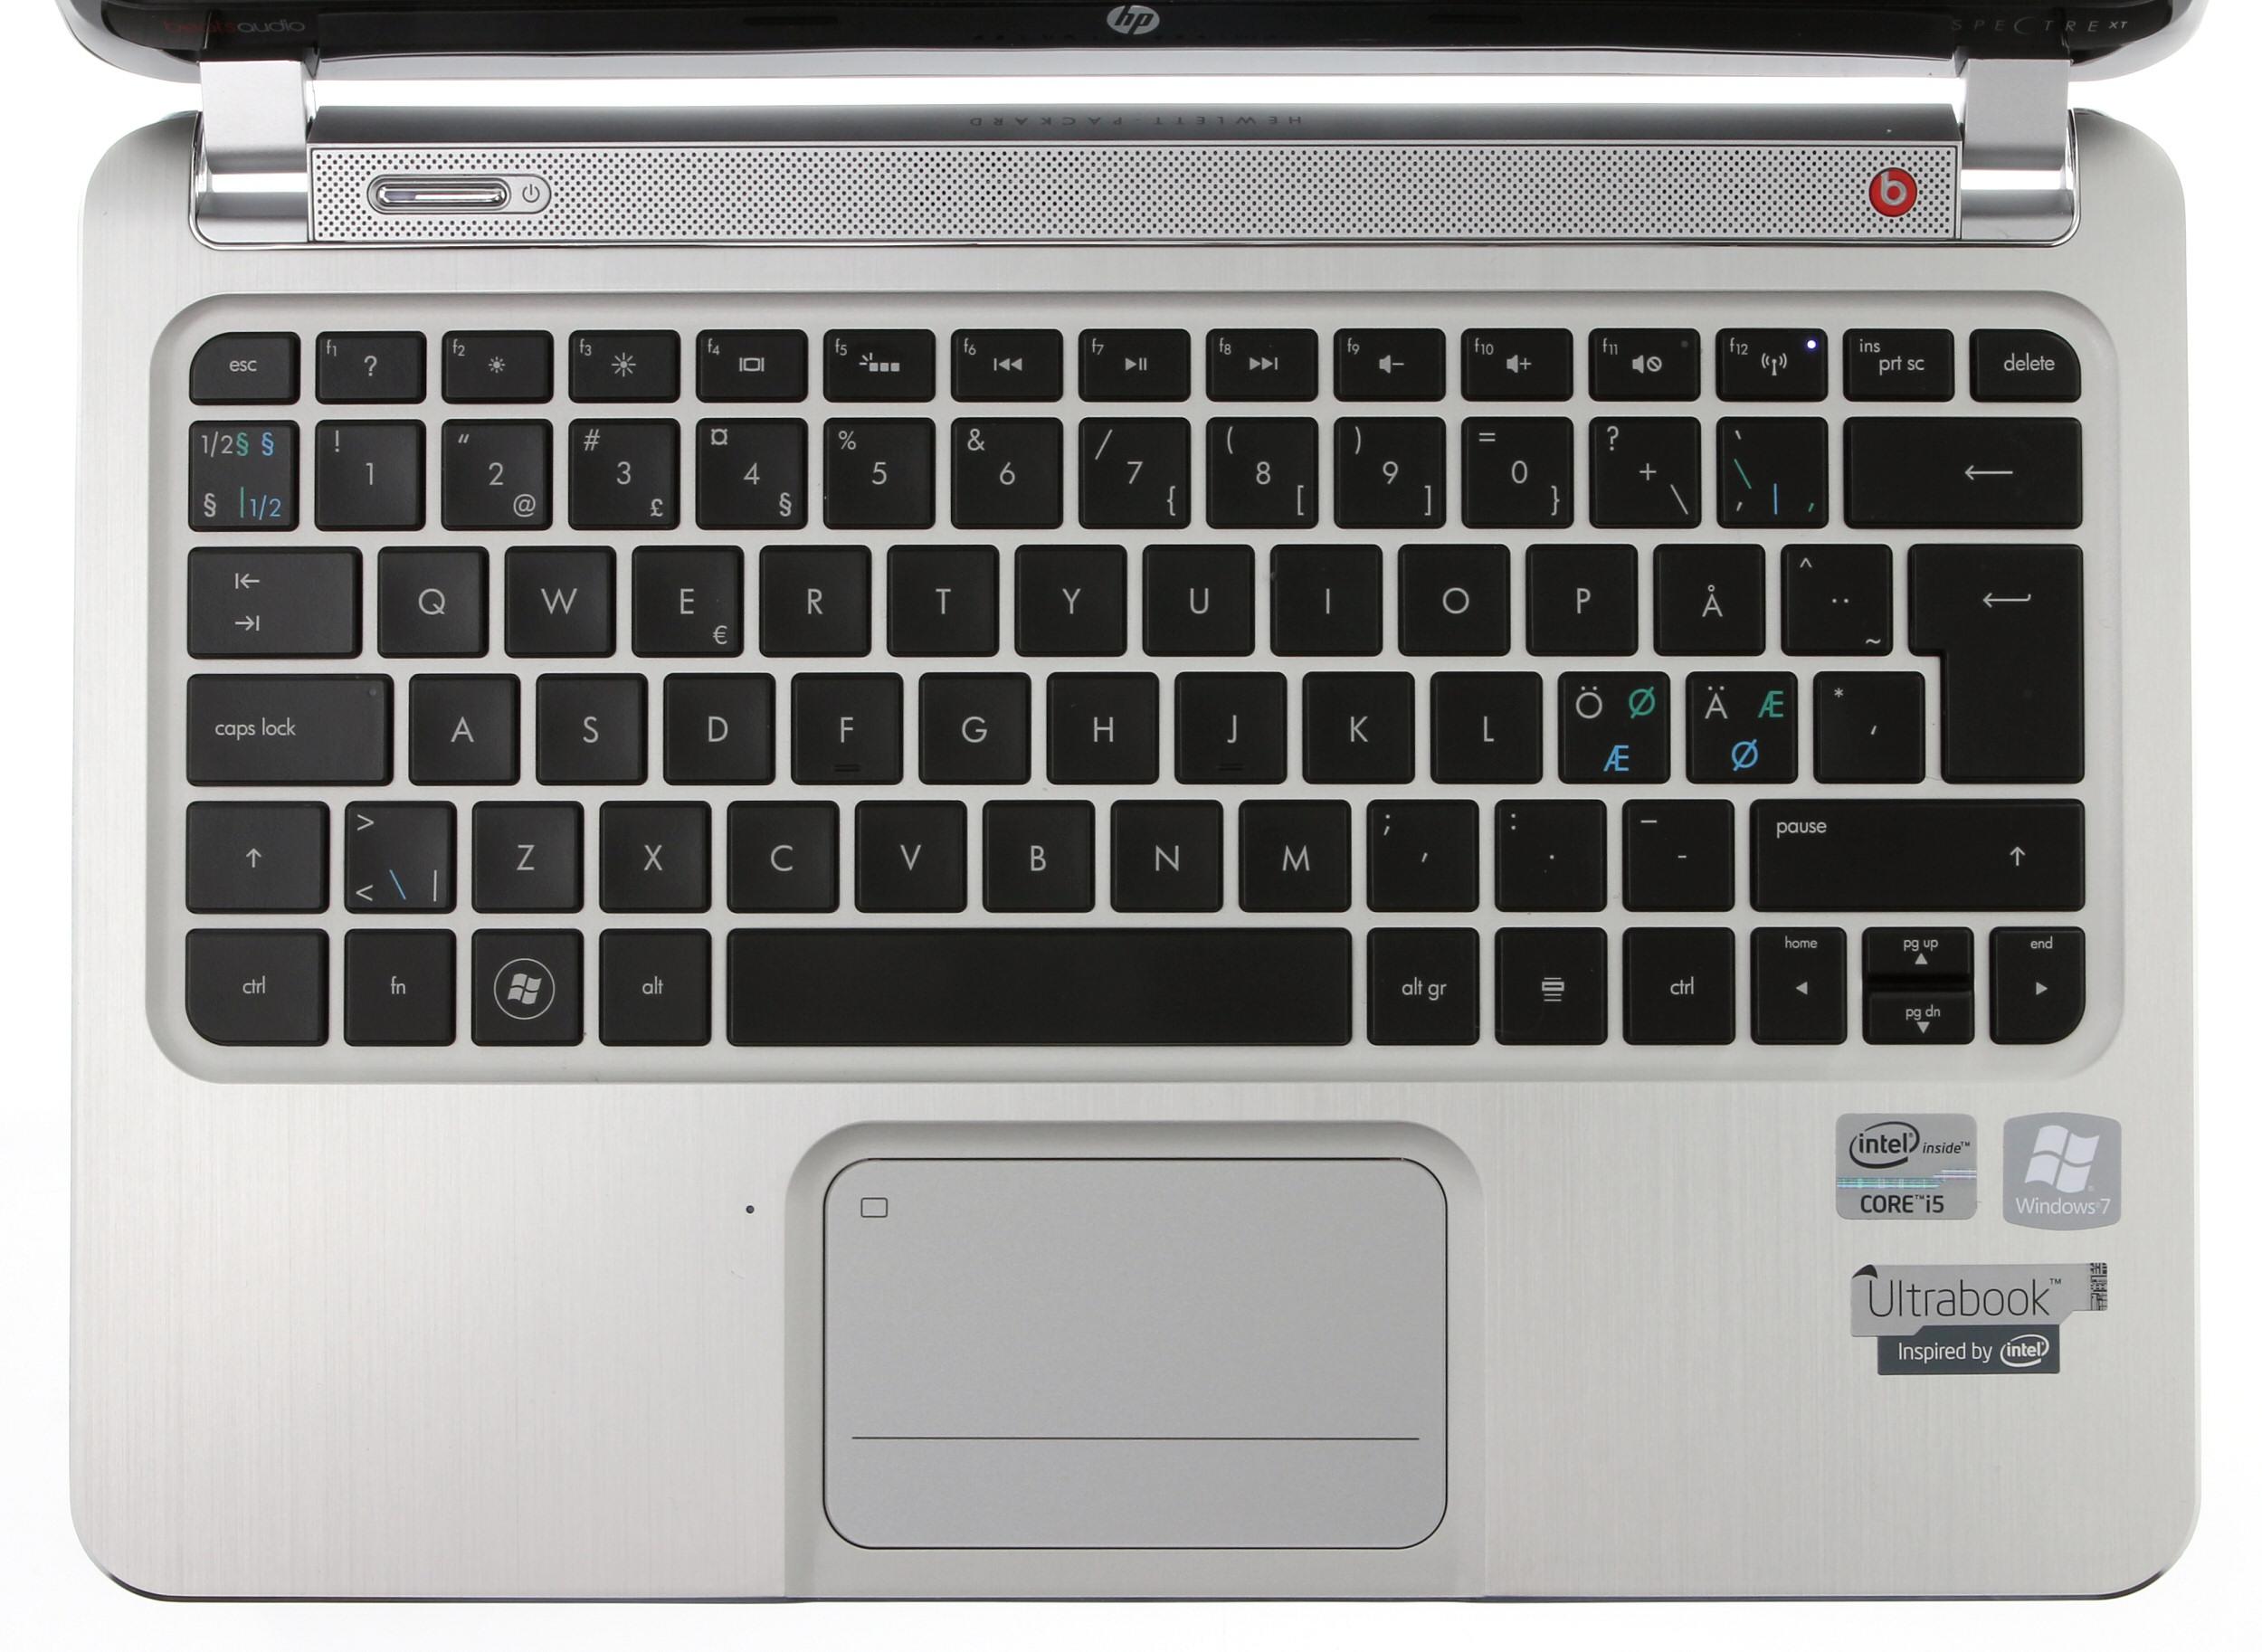 HP Envy Spectre XT har et godt tastatur og god pekeplate med integrerte musetaster.Foto: Vegar Jansen, Hardware.no